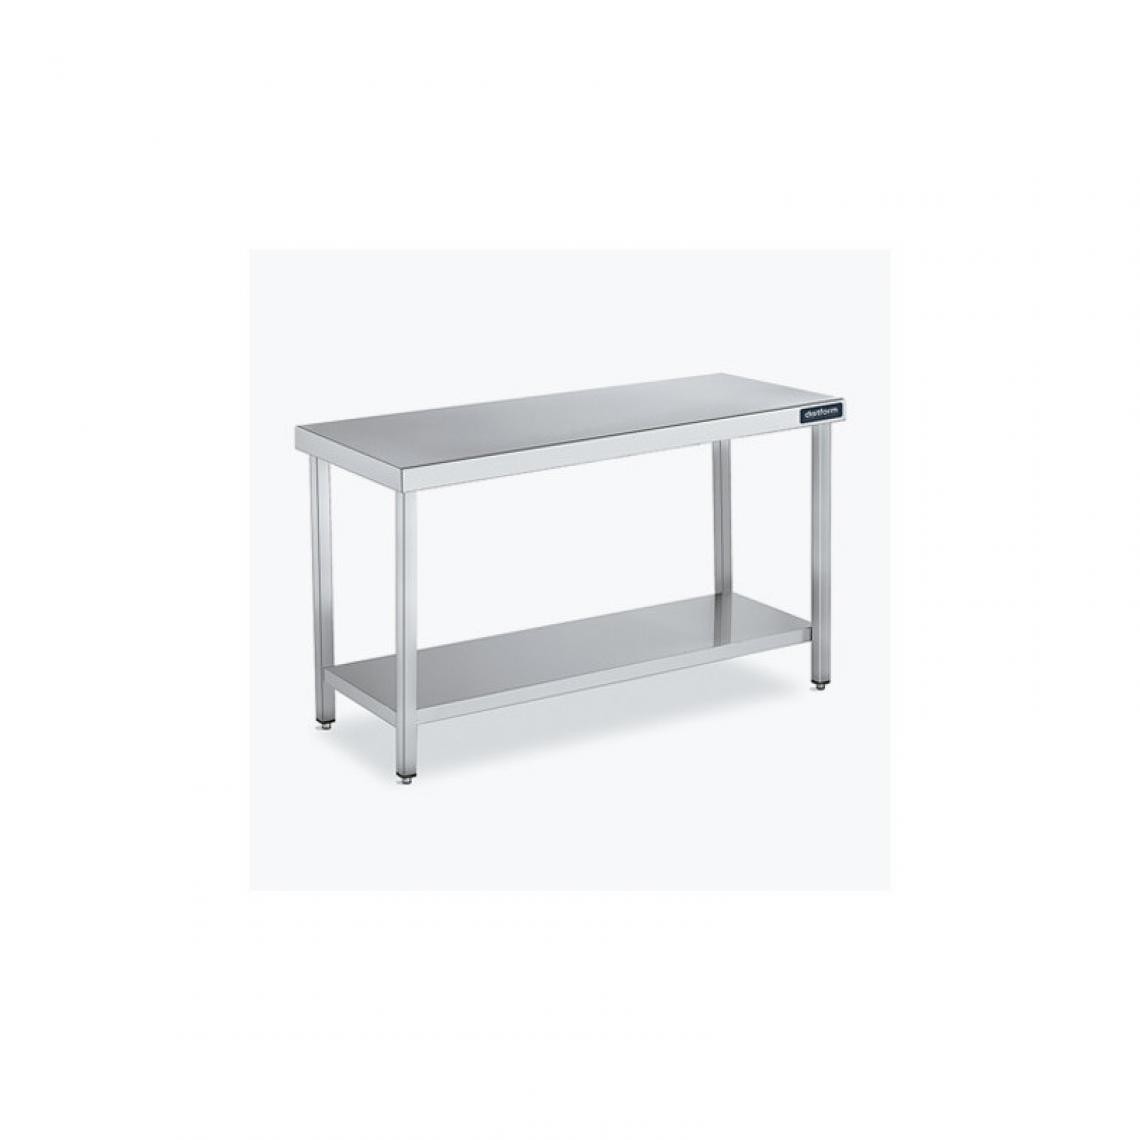 DISTFORM - Table Central 600x550 avec Étagère - Distform - Inox 18/101800x550x850mm - Tables à manger